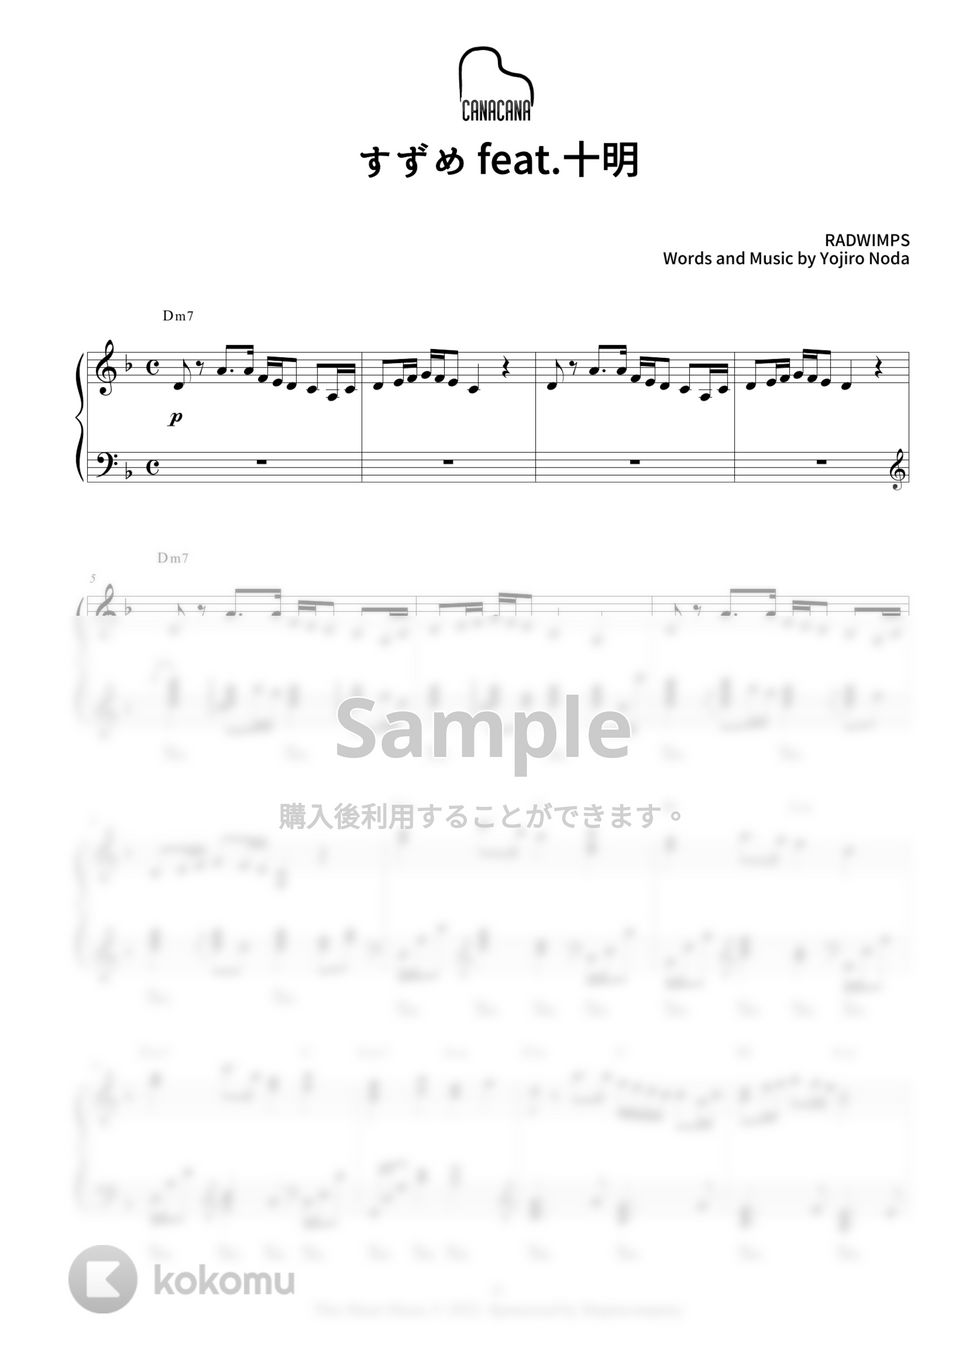 RADWIMPS - すずめ feat.十明 (すずめの戸締まり主題歌) by CANACANA family